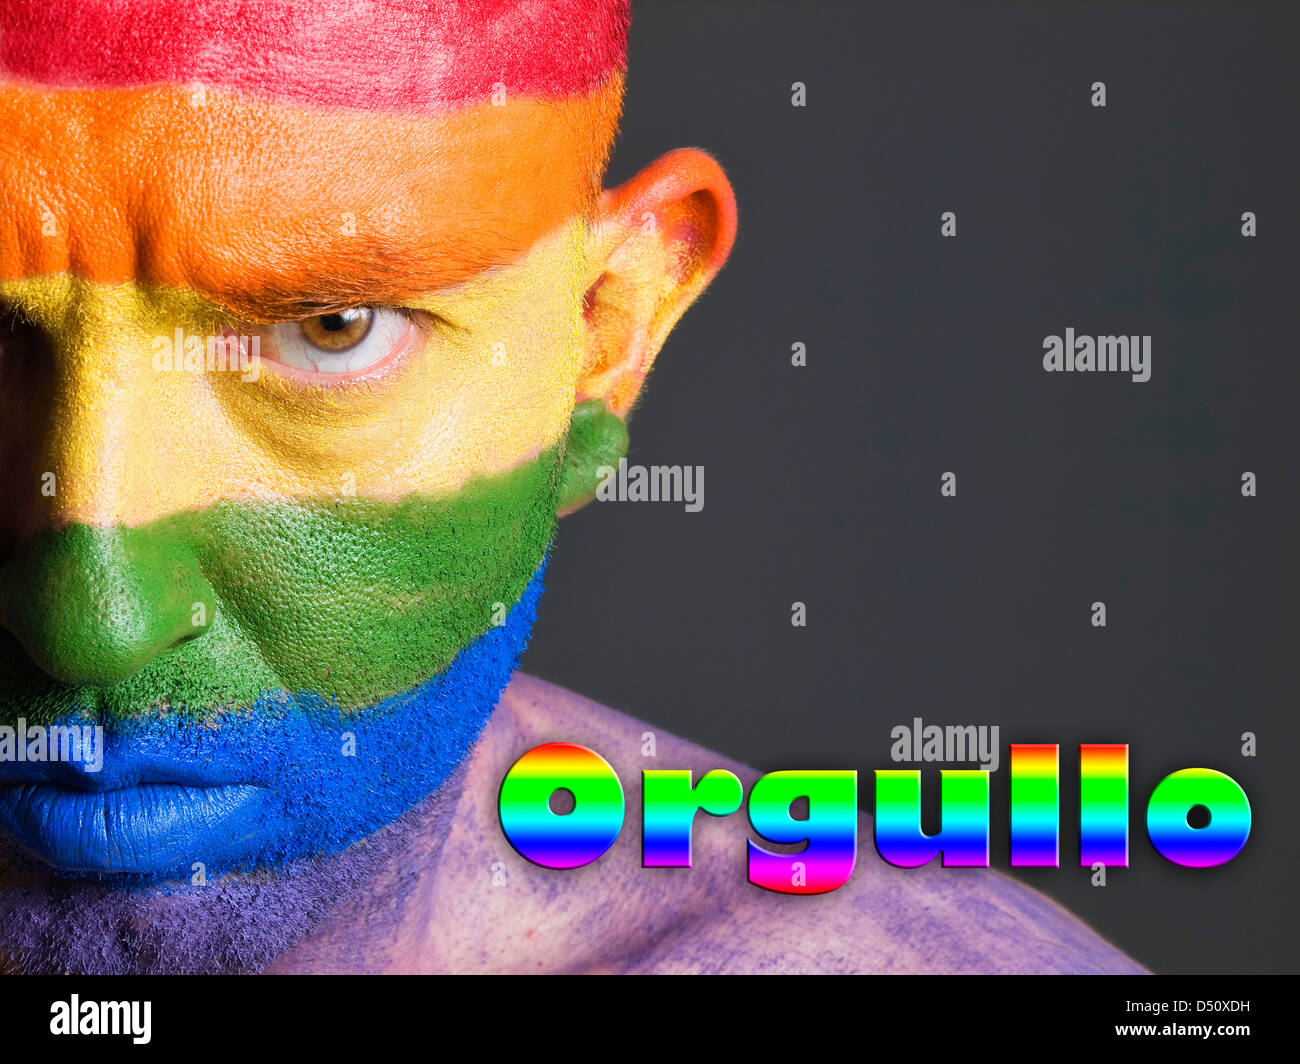 Hombre con la bandera gay pintada en la cara y con una expresion seria. La palabra orgullo esta escrita en un lado. Stock Photo